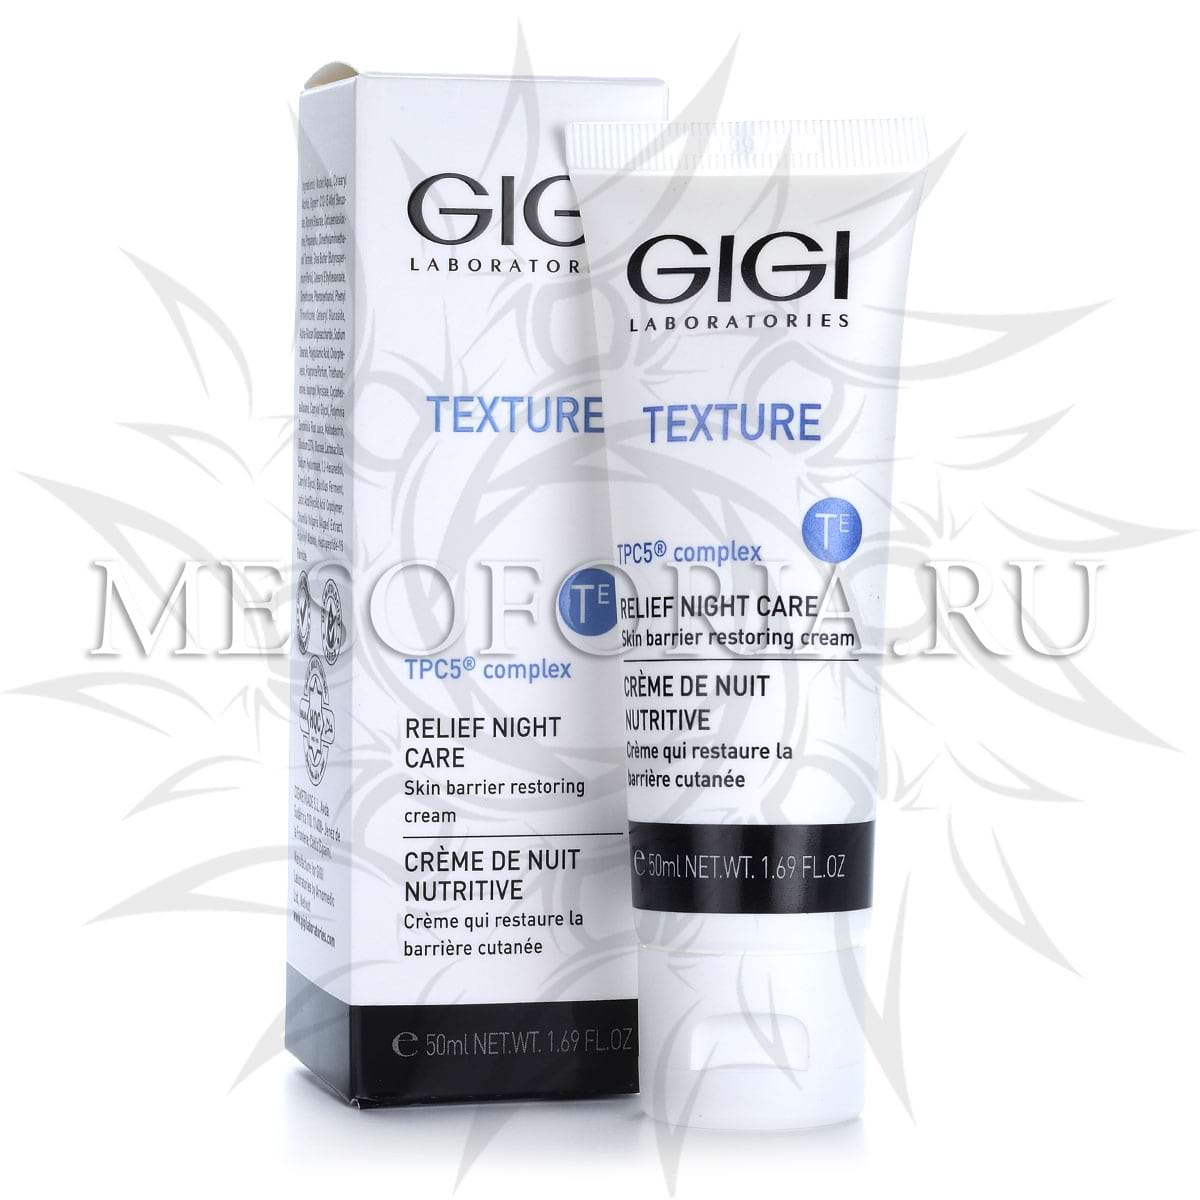 Крем ночной восстанавливающий / Relief Night Cream, Texture, GiGi (Джи Джи) – 50 мл